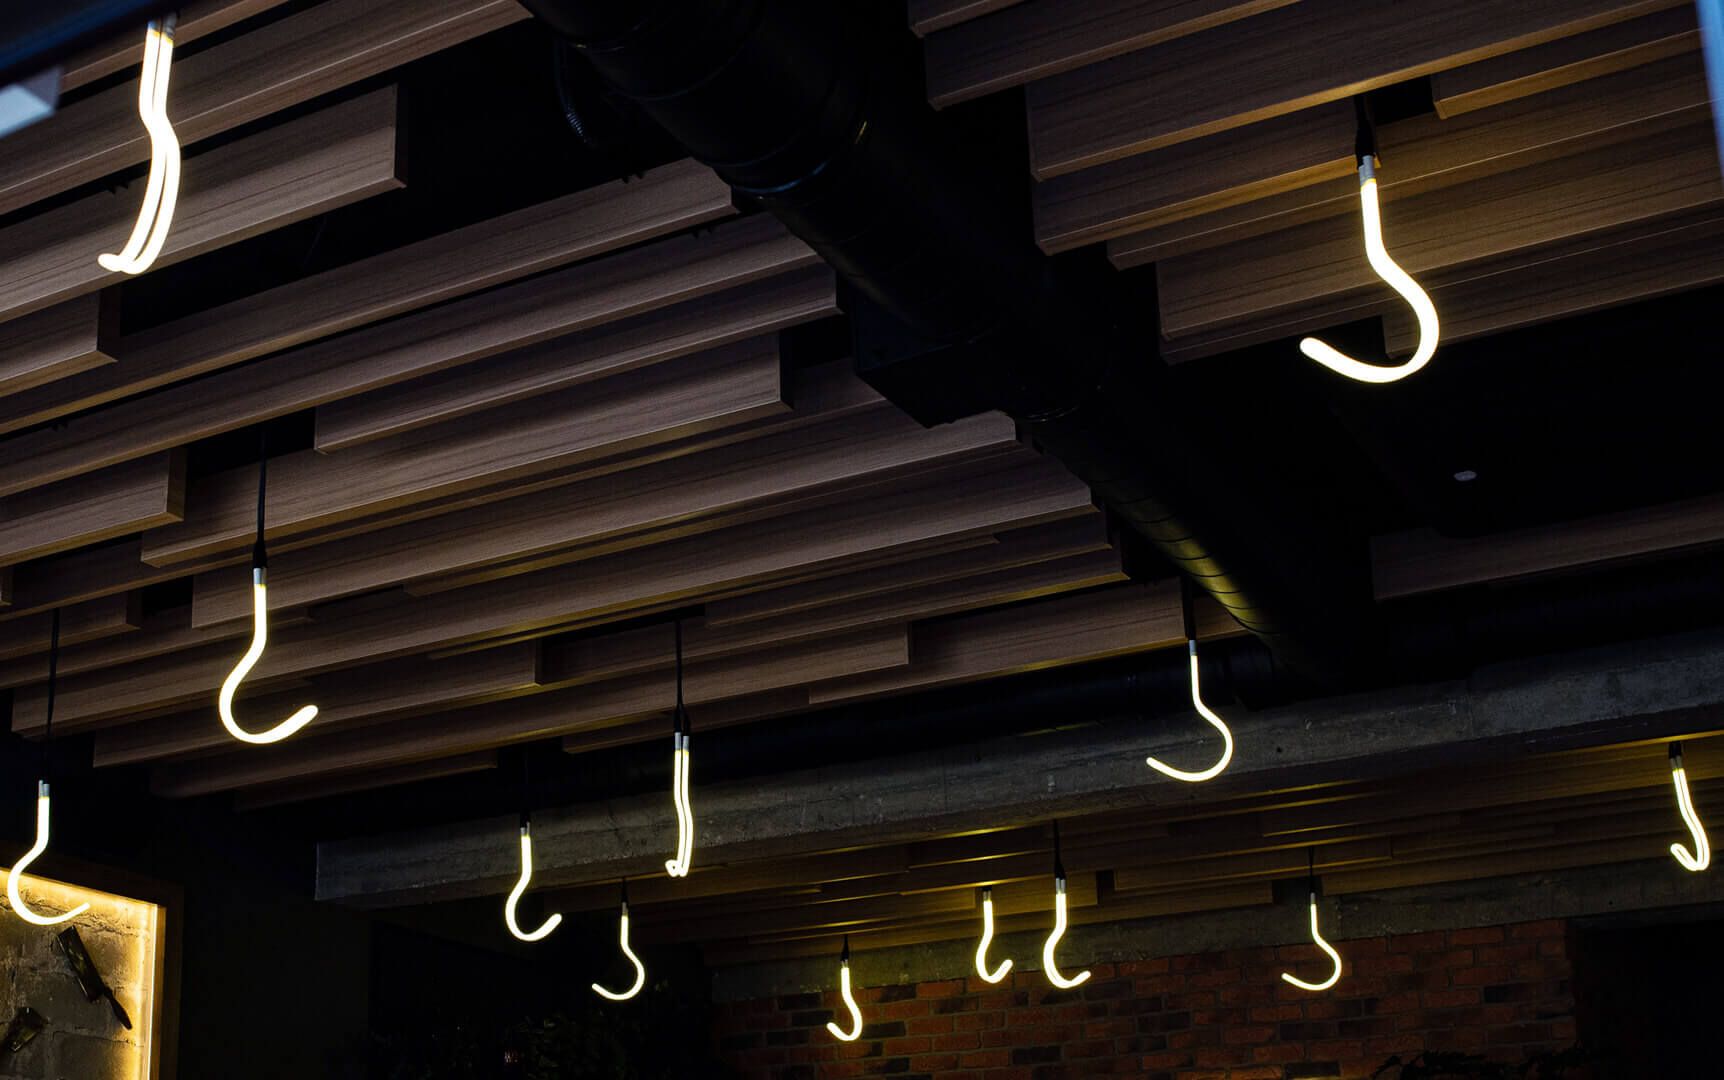 Crochets en néon - Des crochets au néon sur le plafond dans le steakhouse.